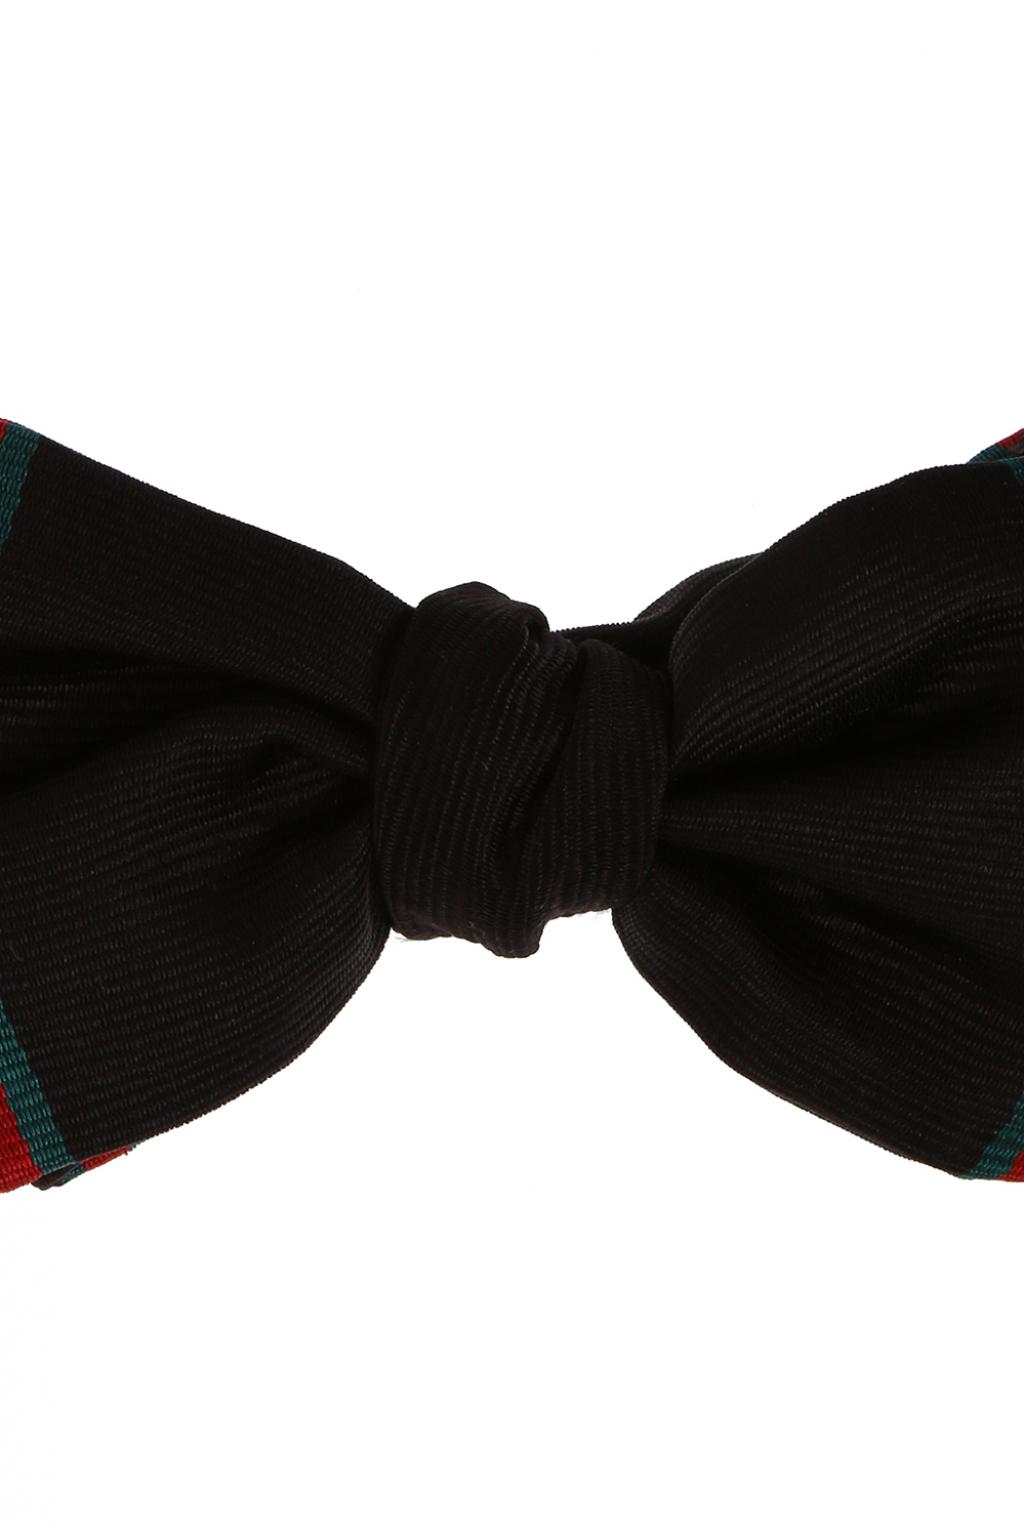 gucci bow tie